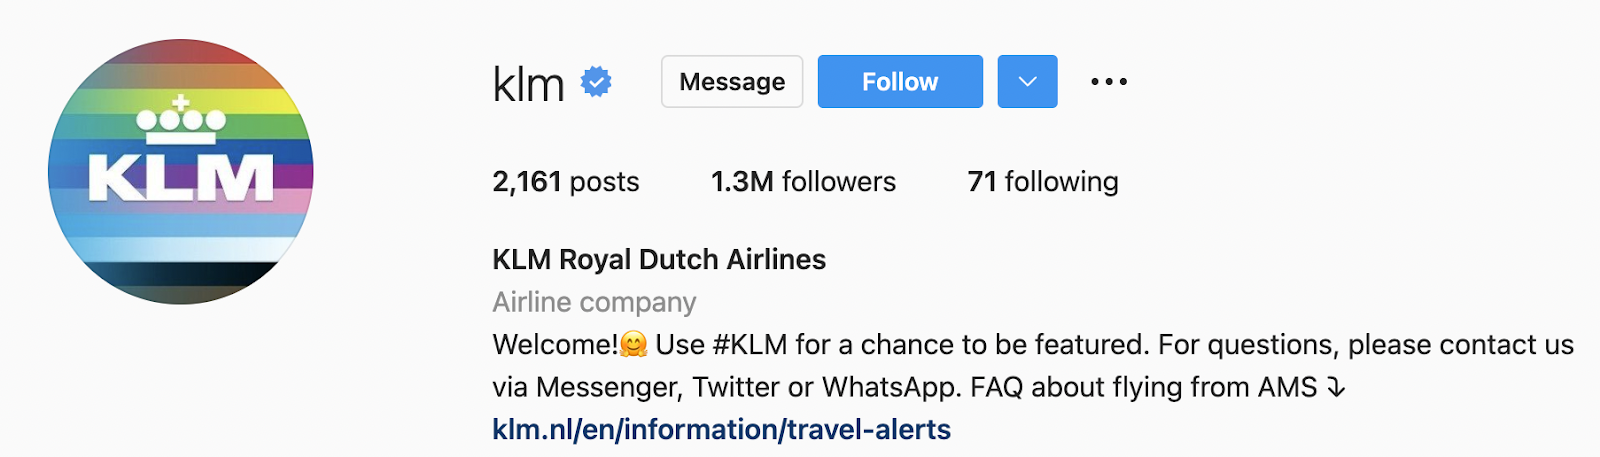 KLM Instagram homepage